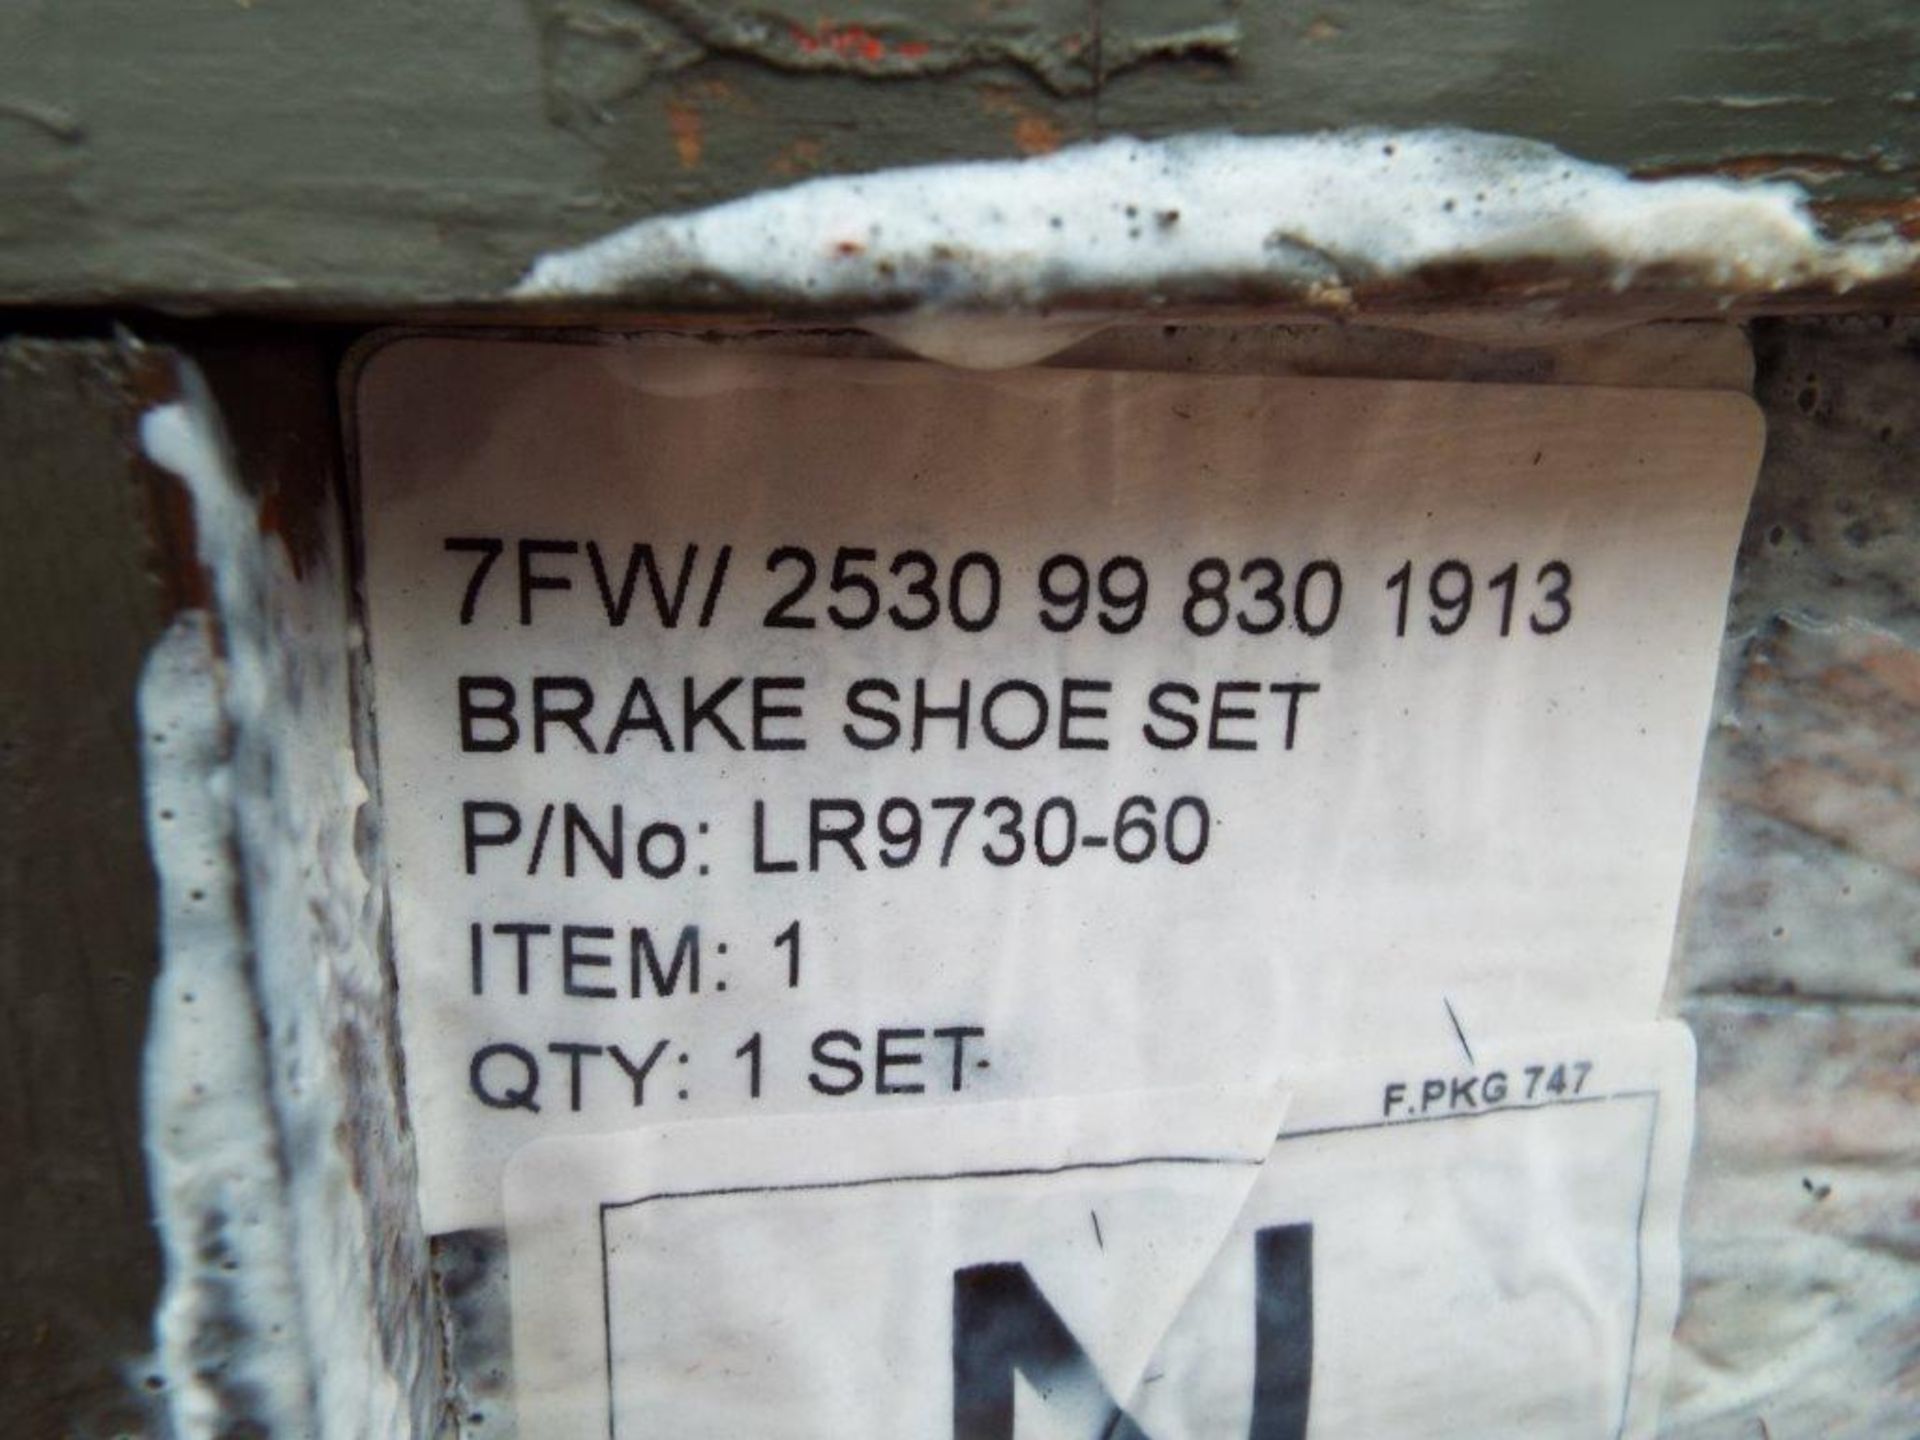 6 x Leyland DAF Brake Shoe Sets P/No LR9730-60 - Image 6 of 7